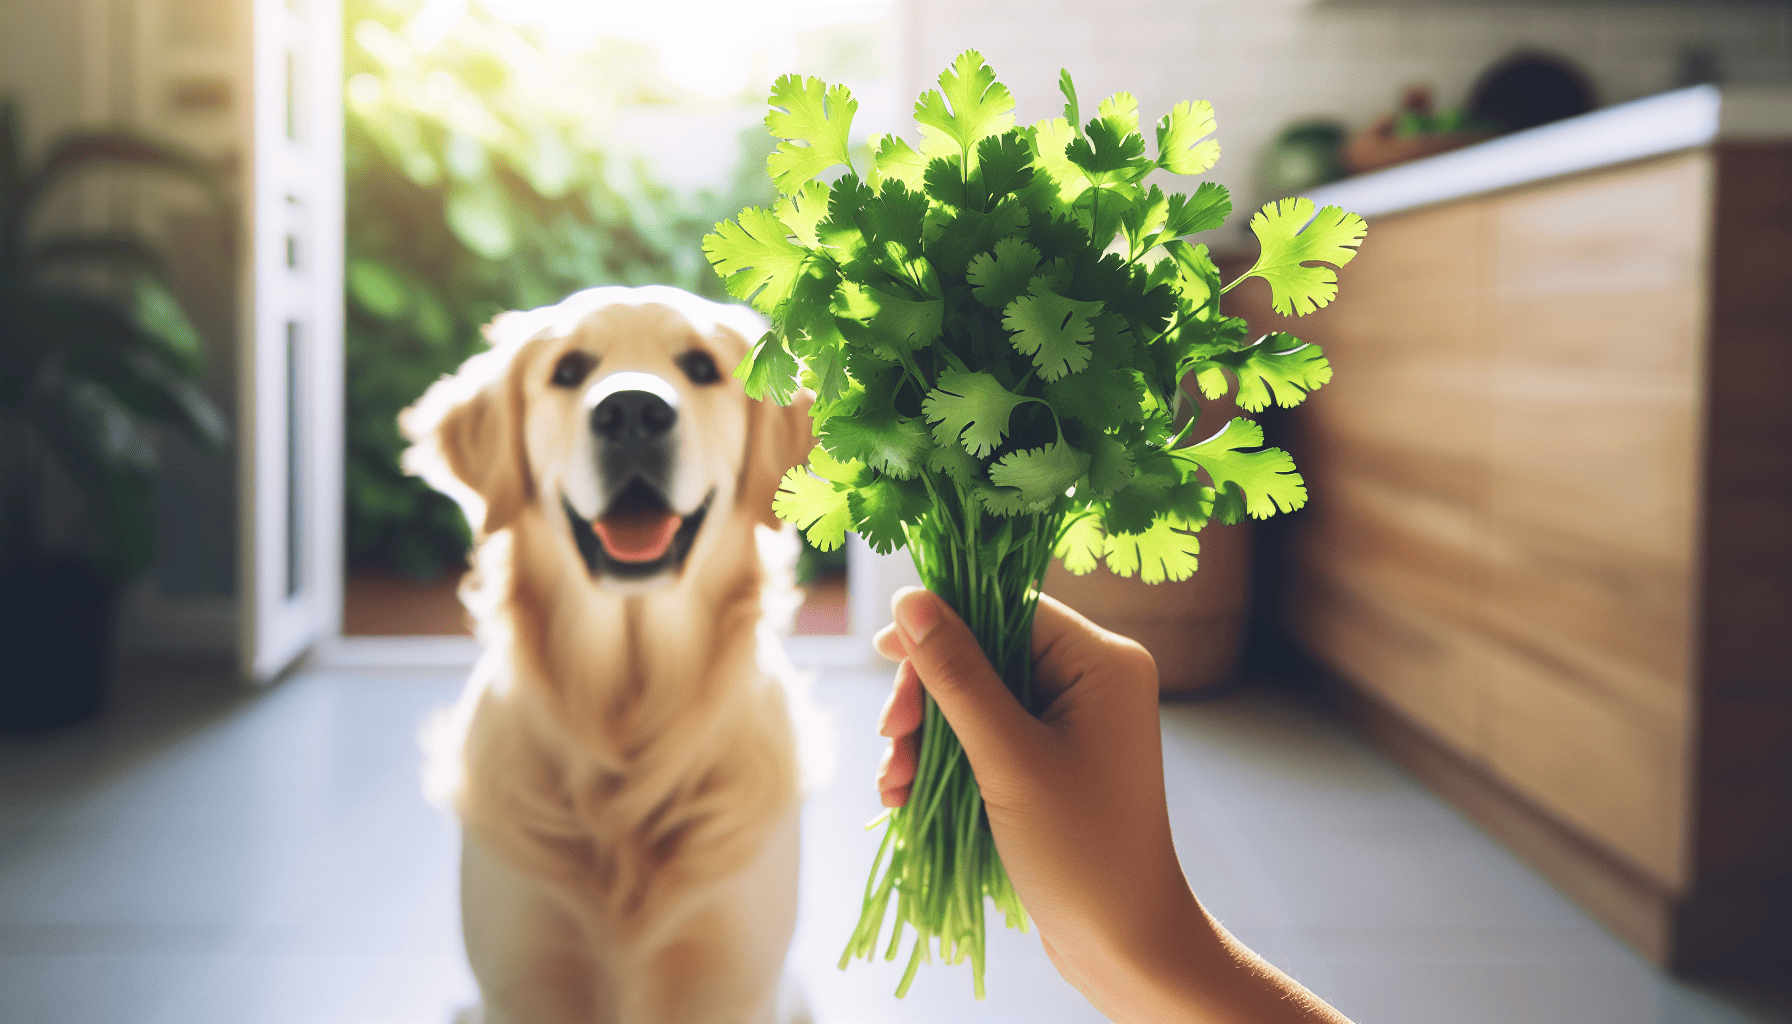 Nutrient-rich cilantro leaves